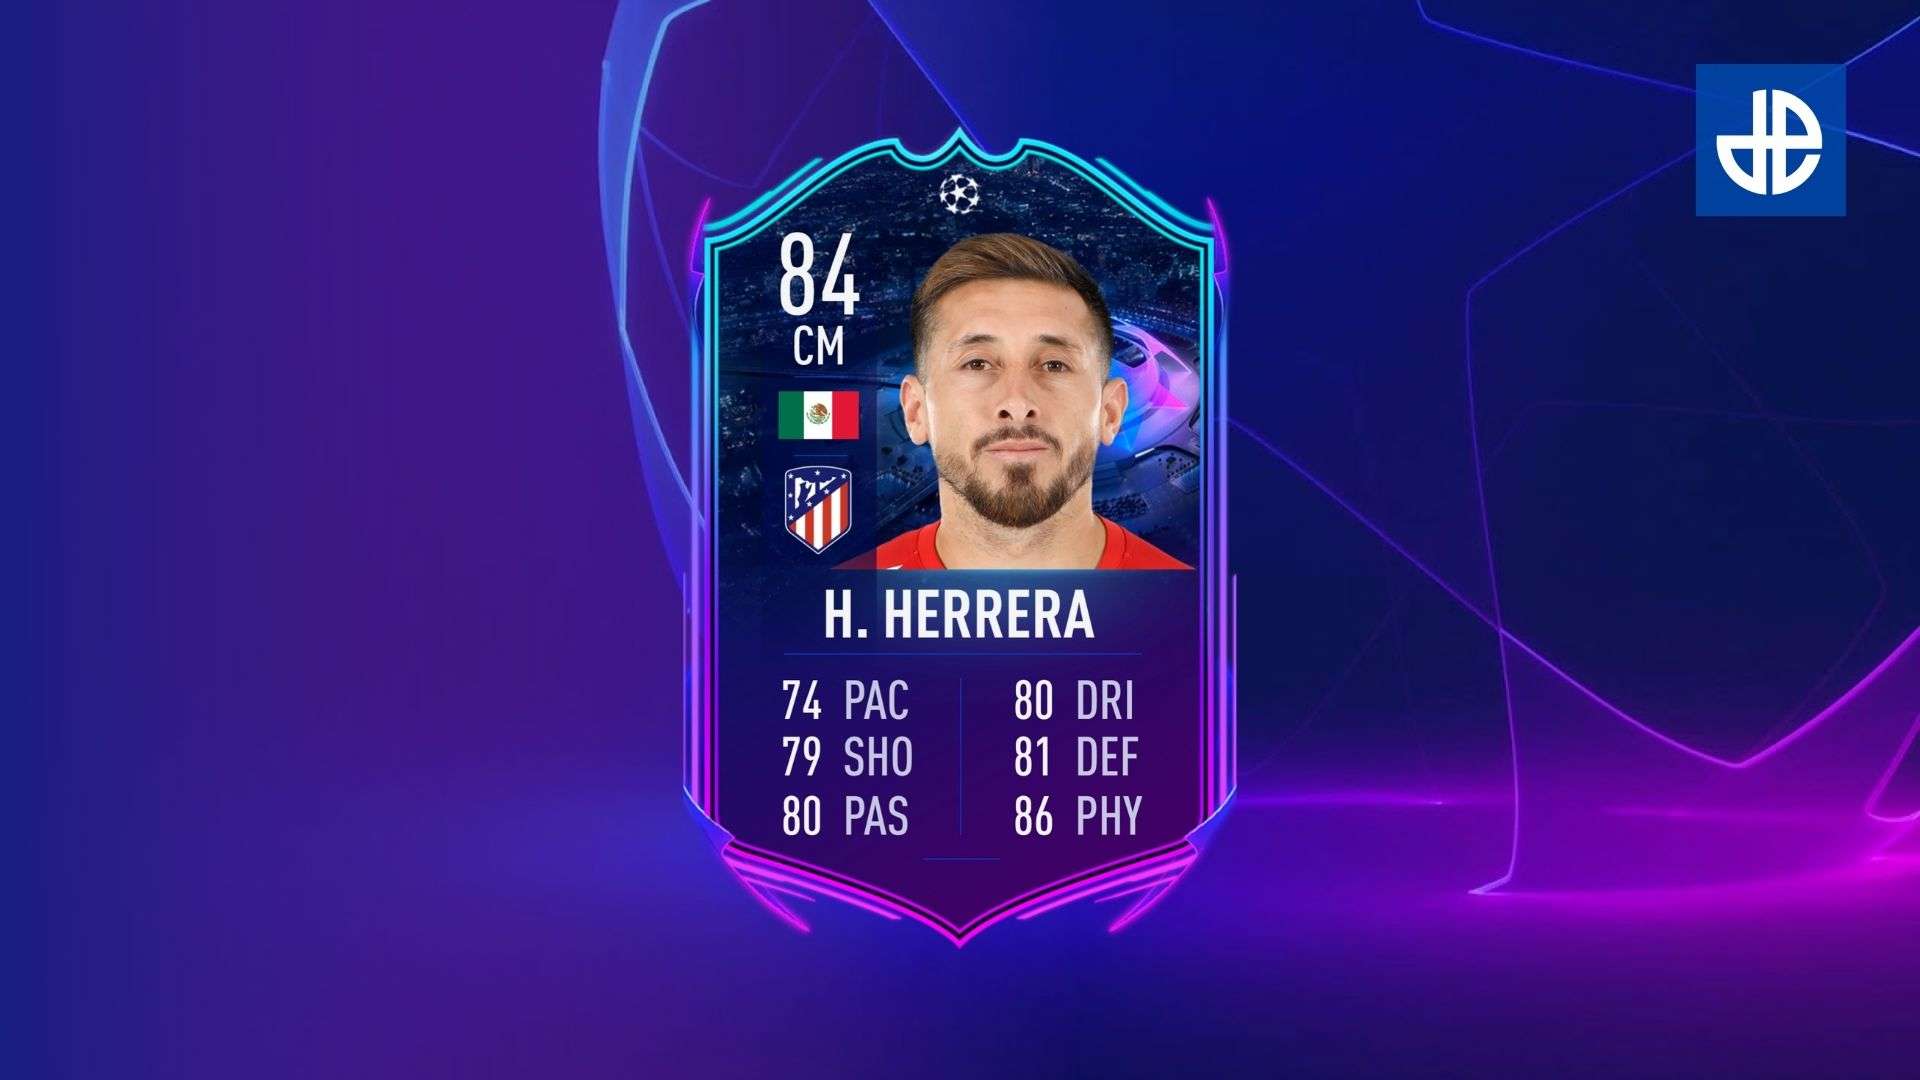 Hector Herrera SBC card in FIFA 21